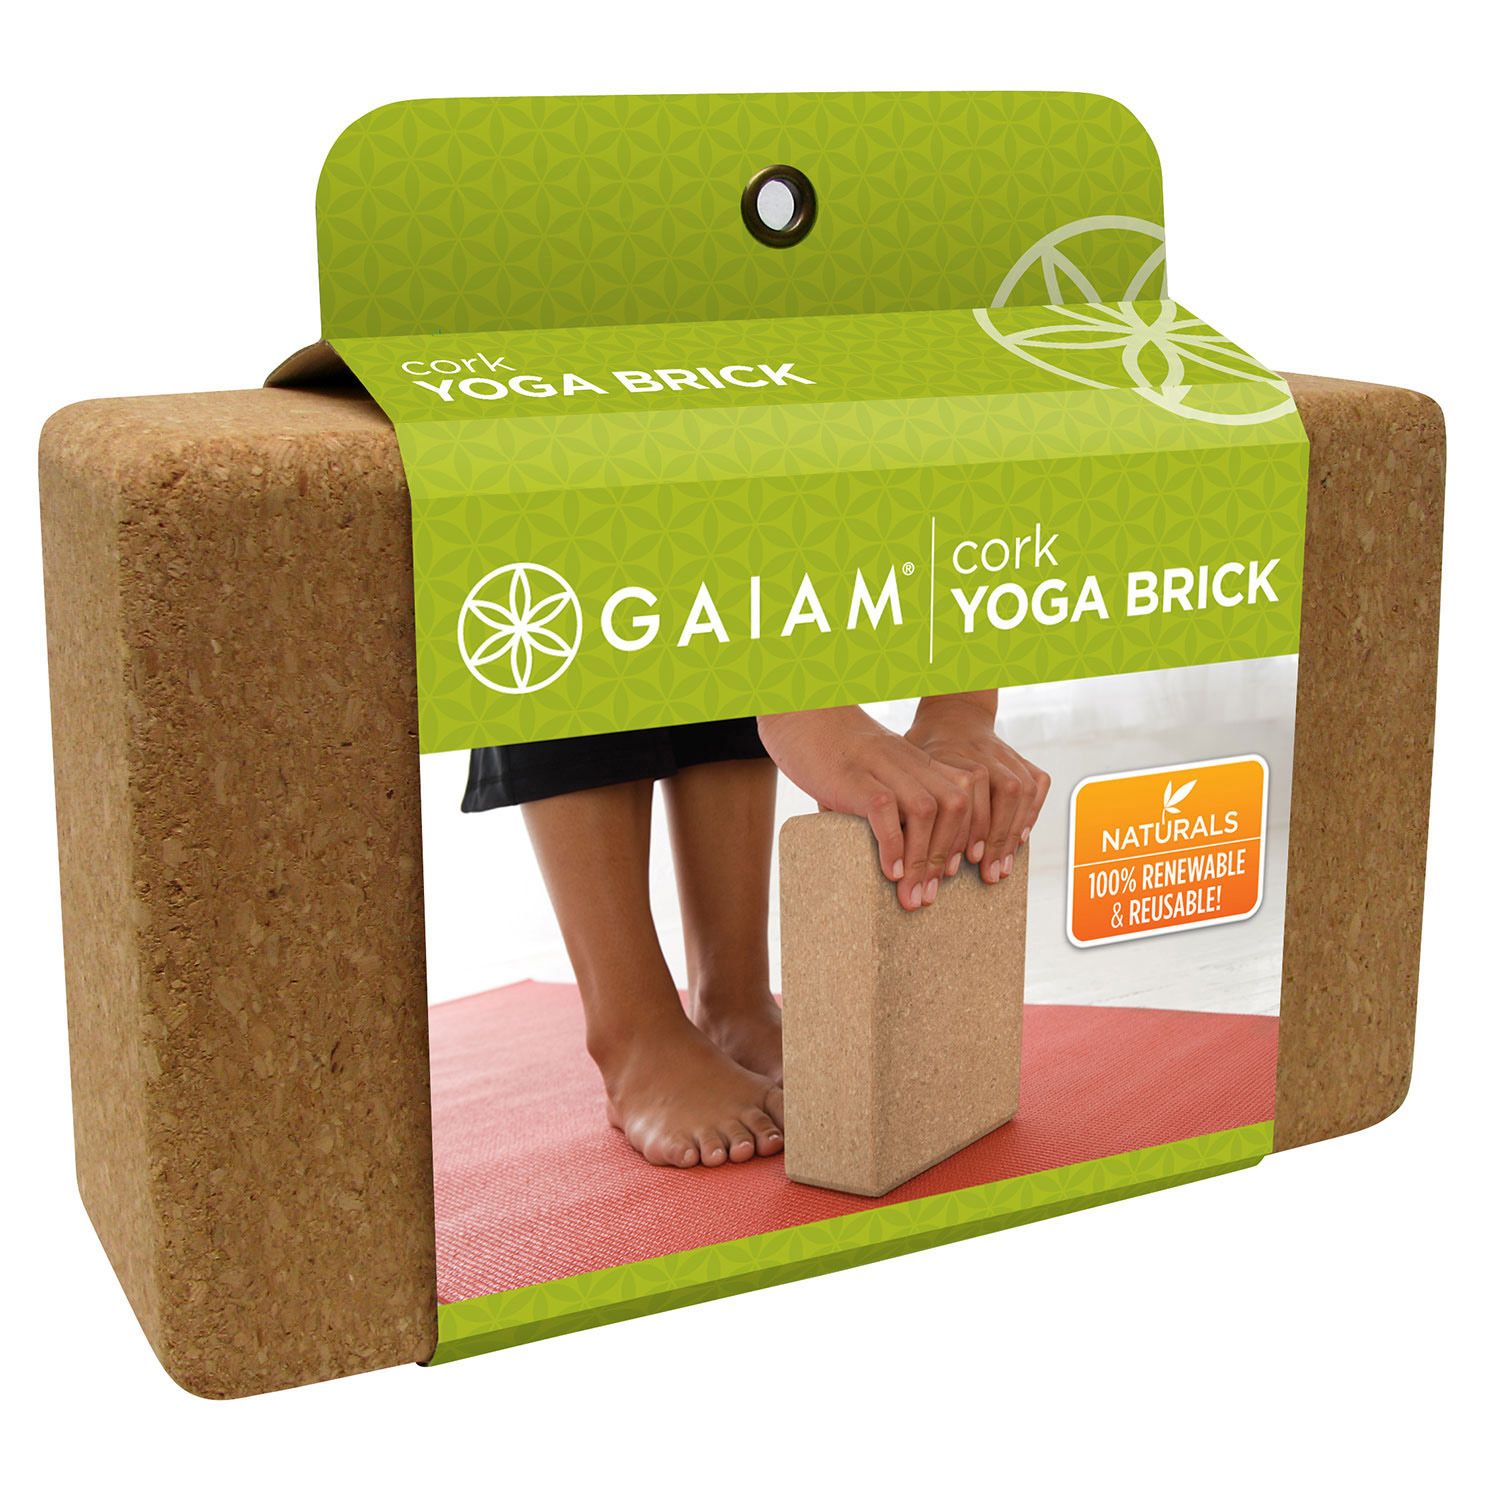 Gaiam Cork Yoga Block 3 Inch at